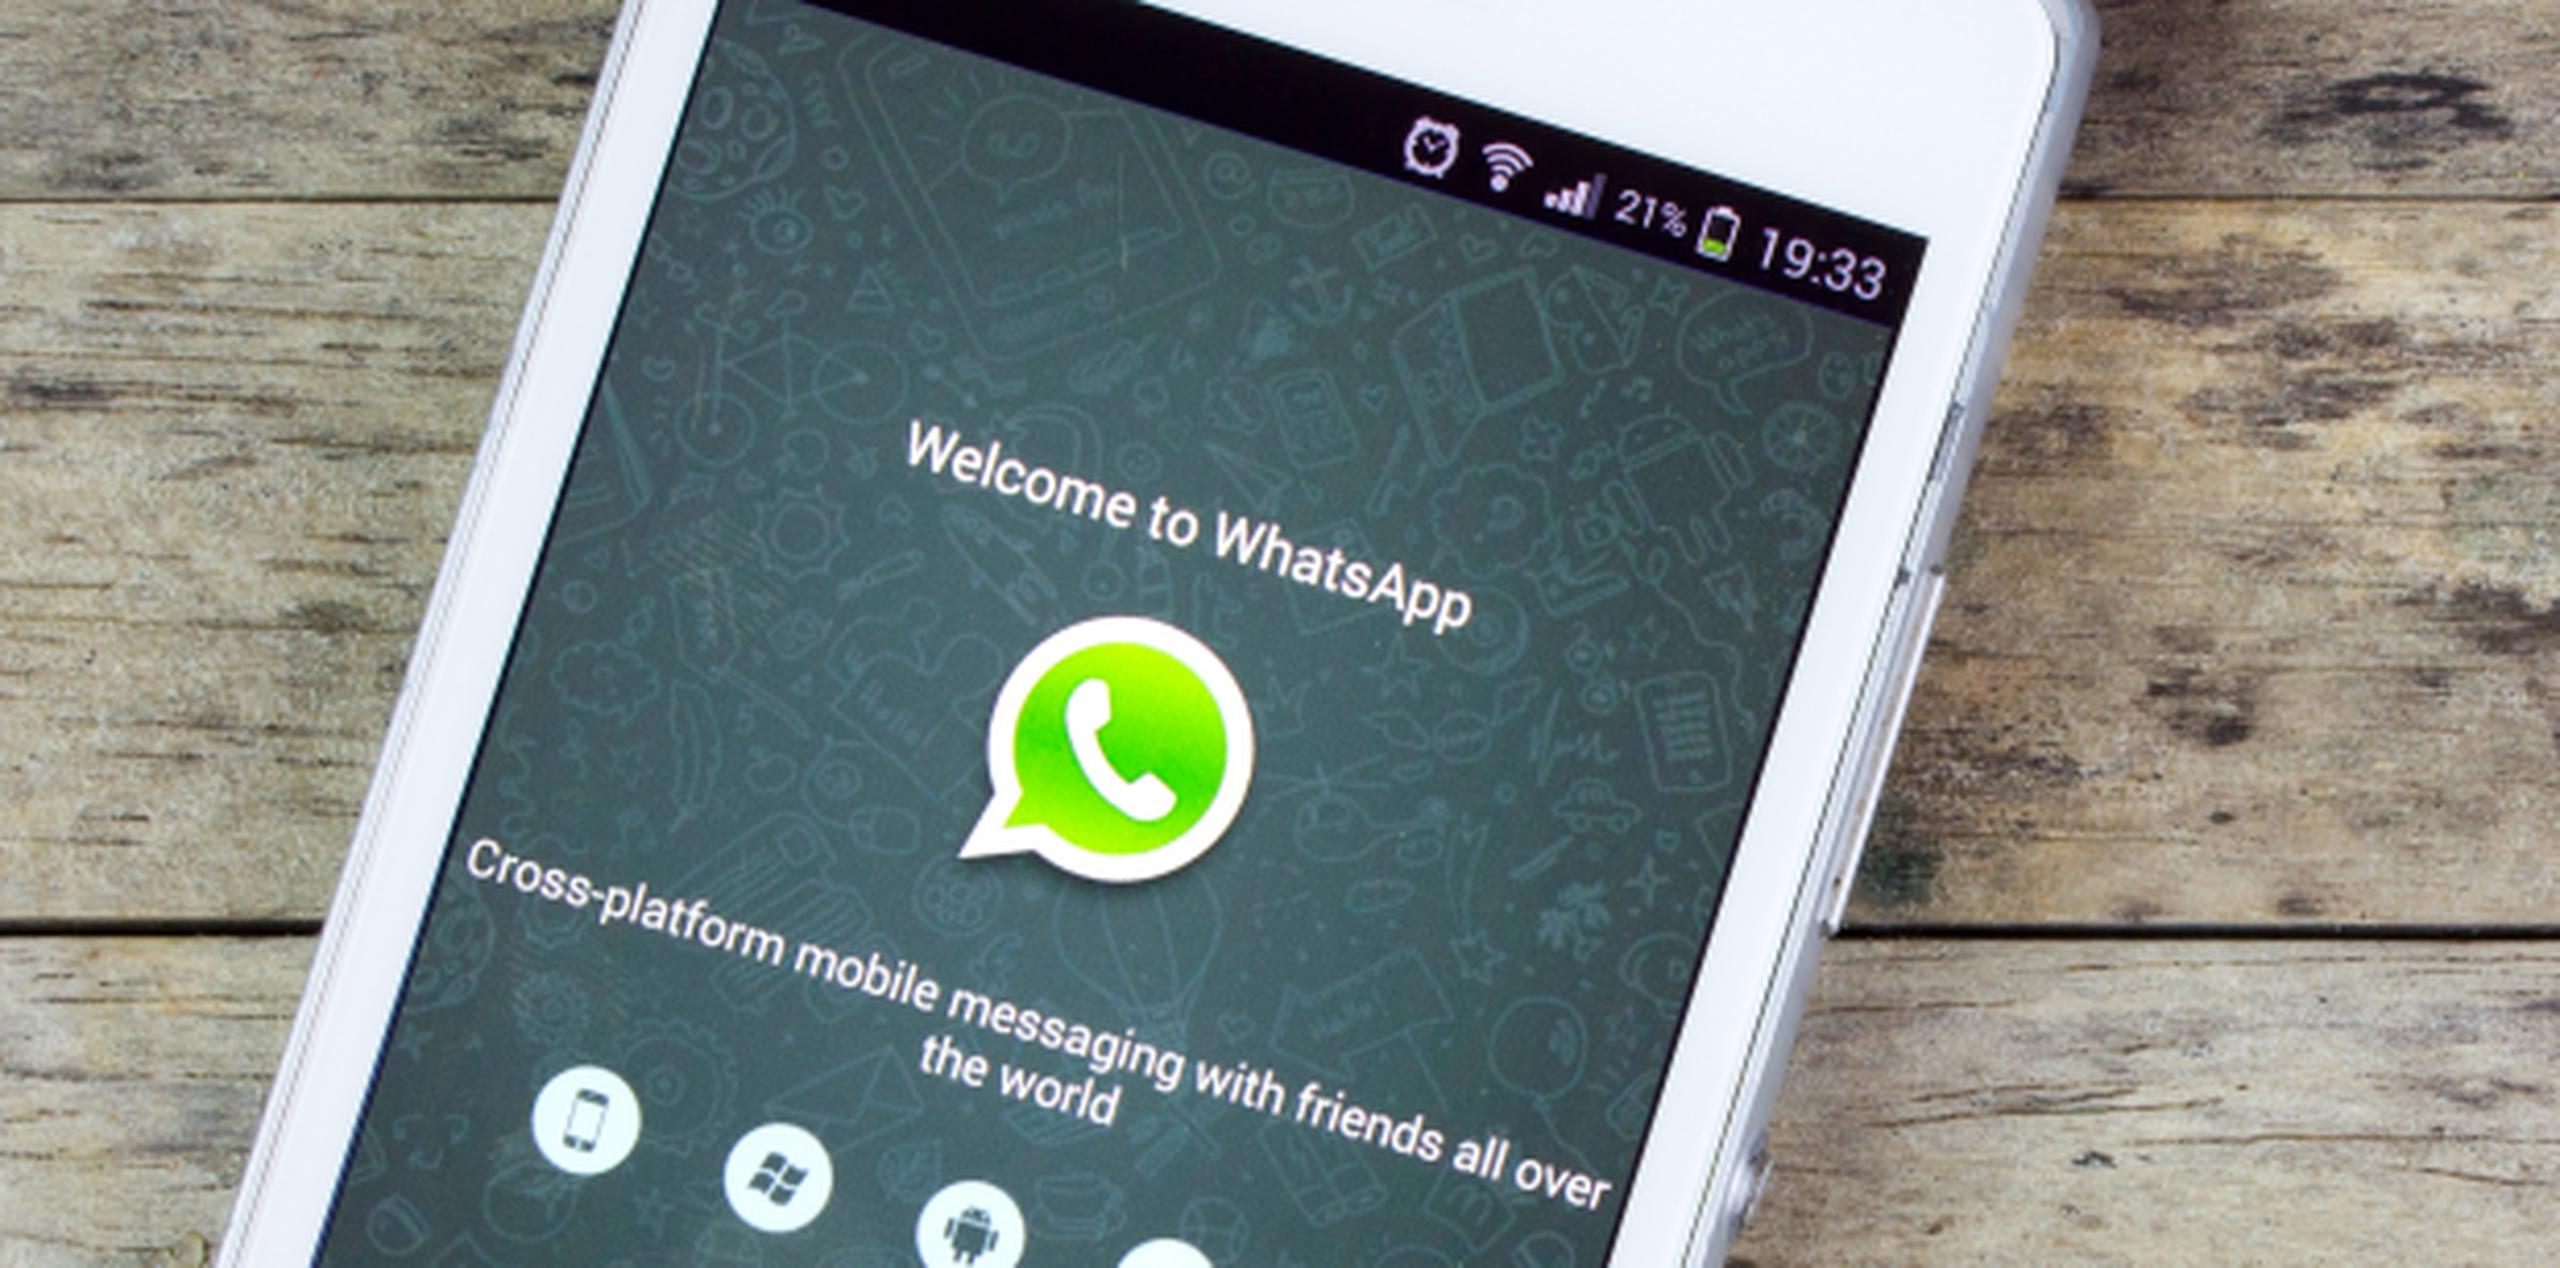 Hacer un buen uso de los grupos de WhatsApp puede ser complicado si es que no se tiene clara la causa que juntó a ese conjunto de personas. (Shutterstock)